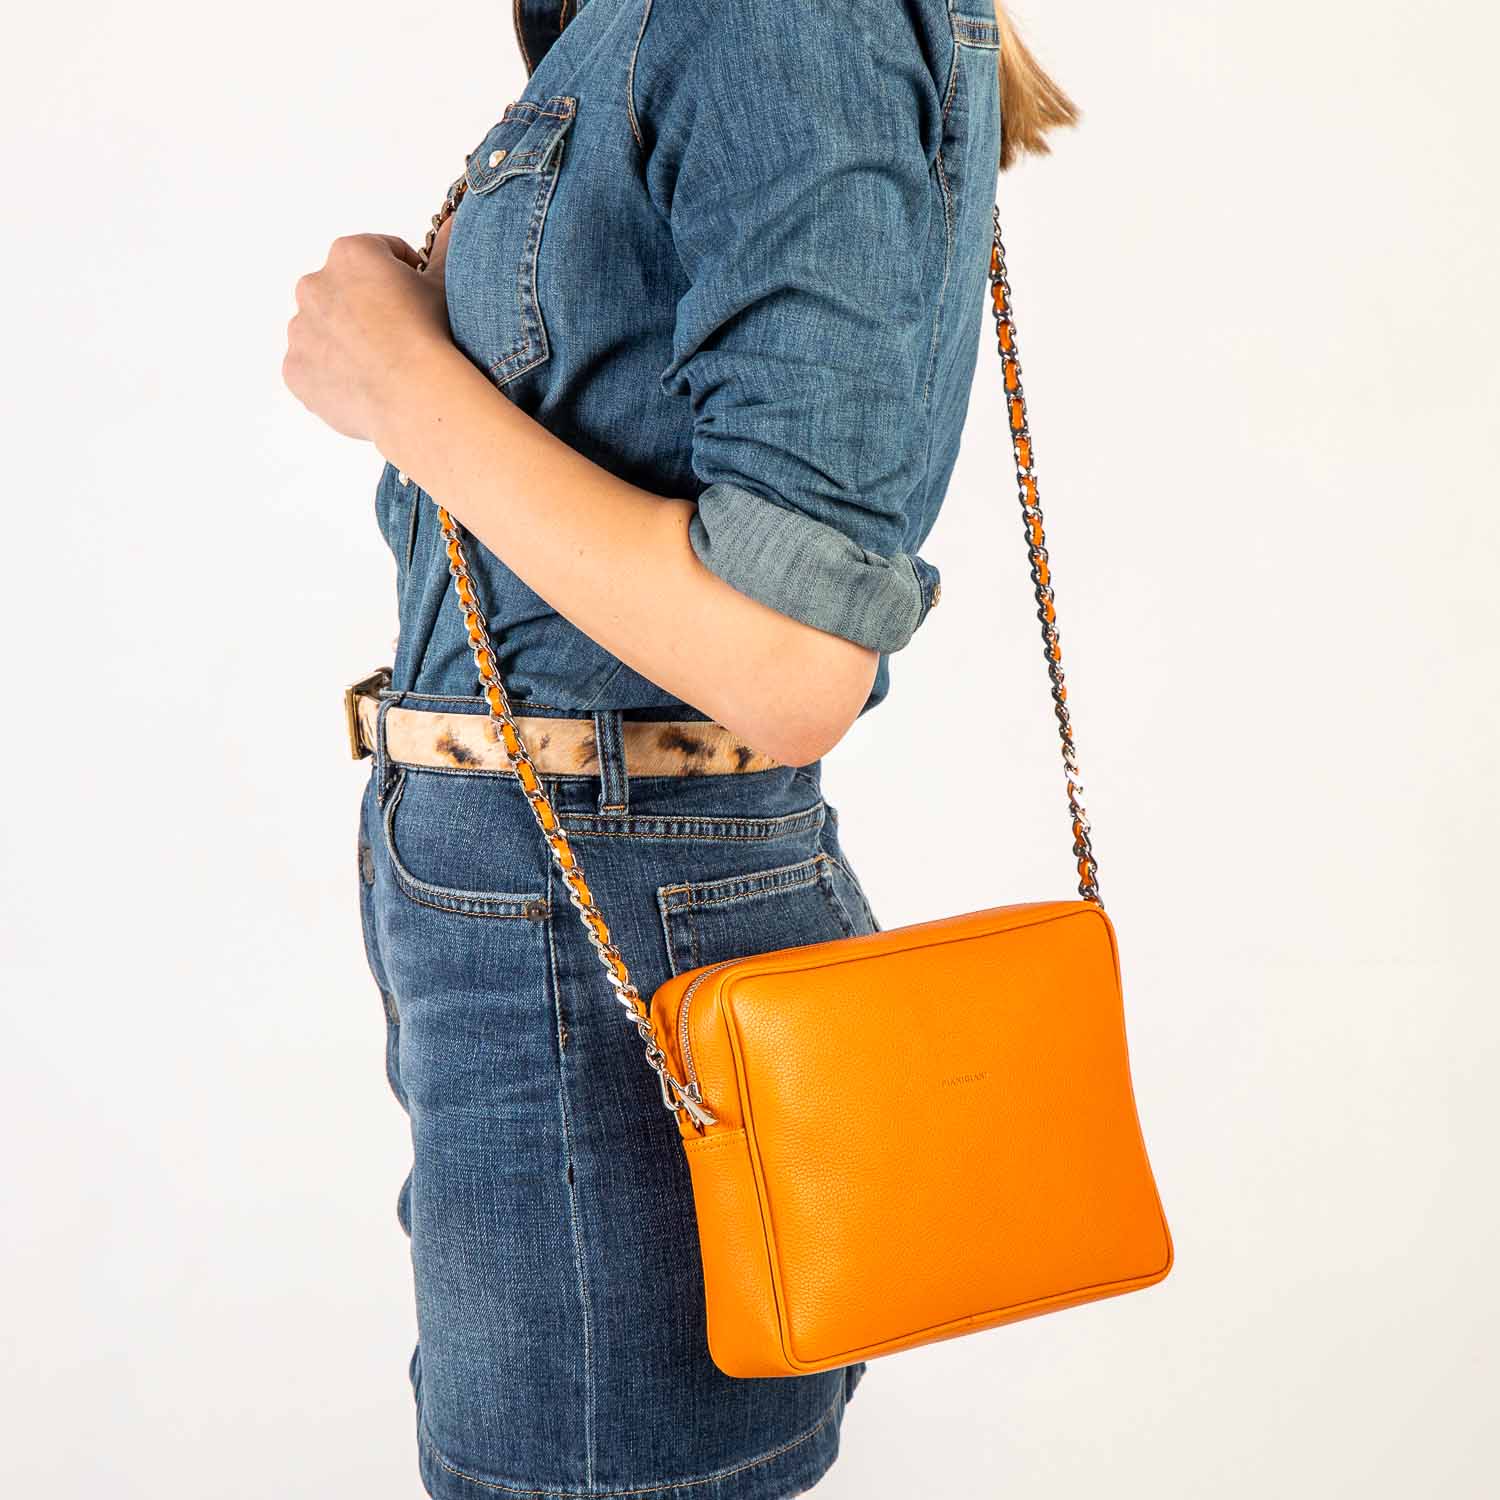 Borsa donna a tracolla in pelle arancione,prodotta a mano presso Pianigiani bags